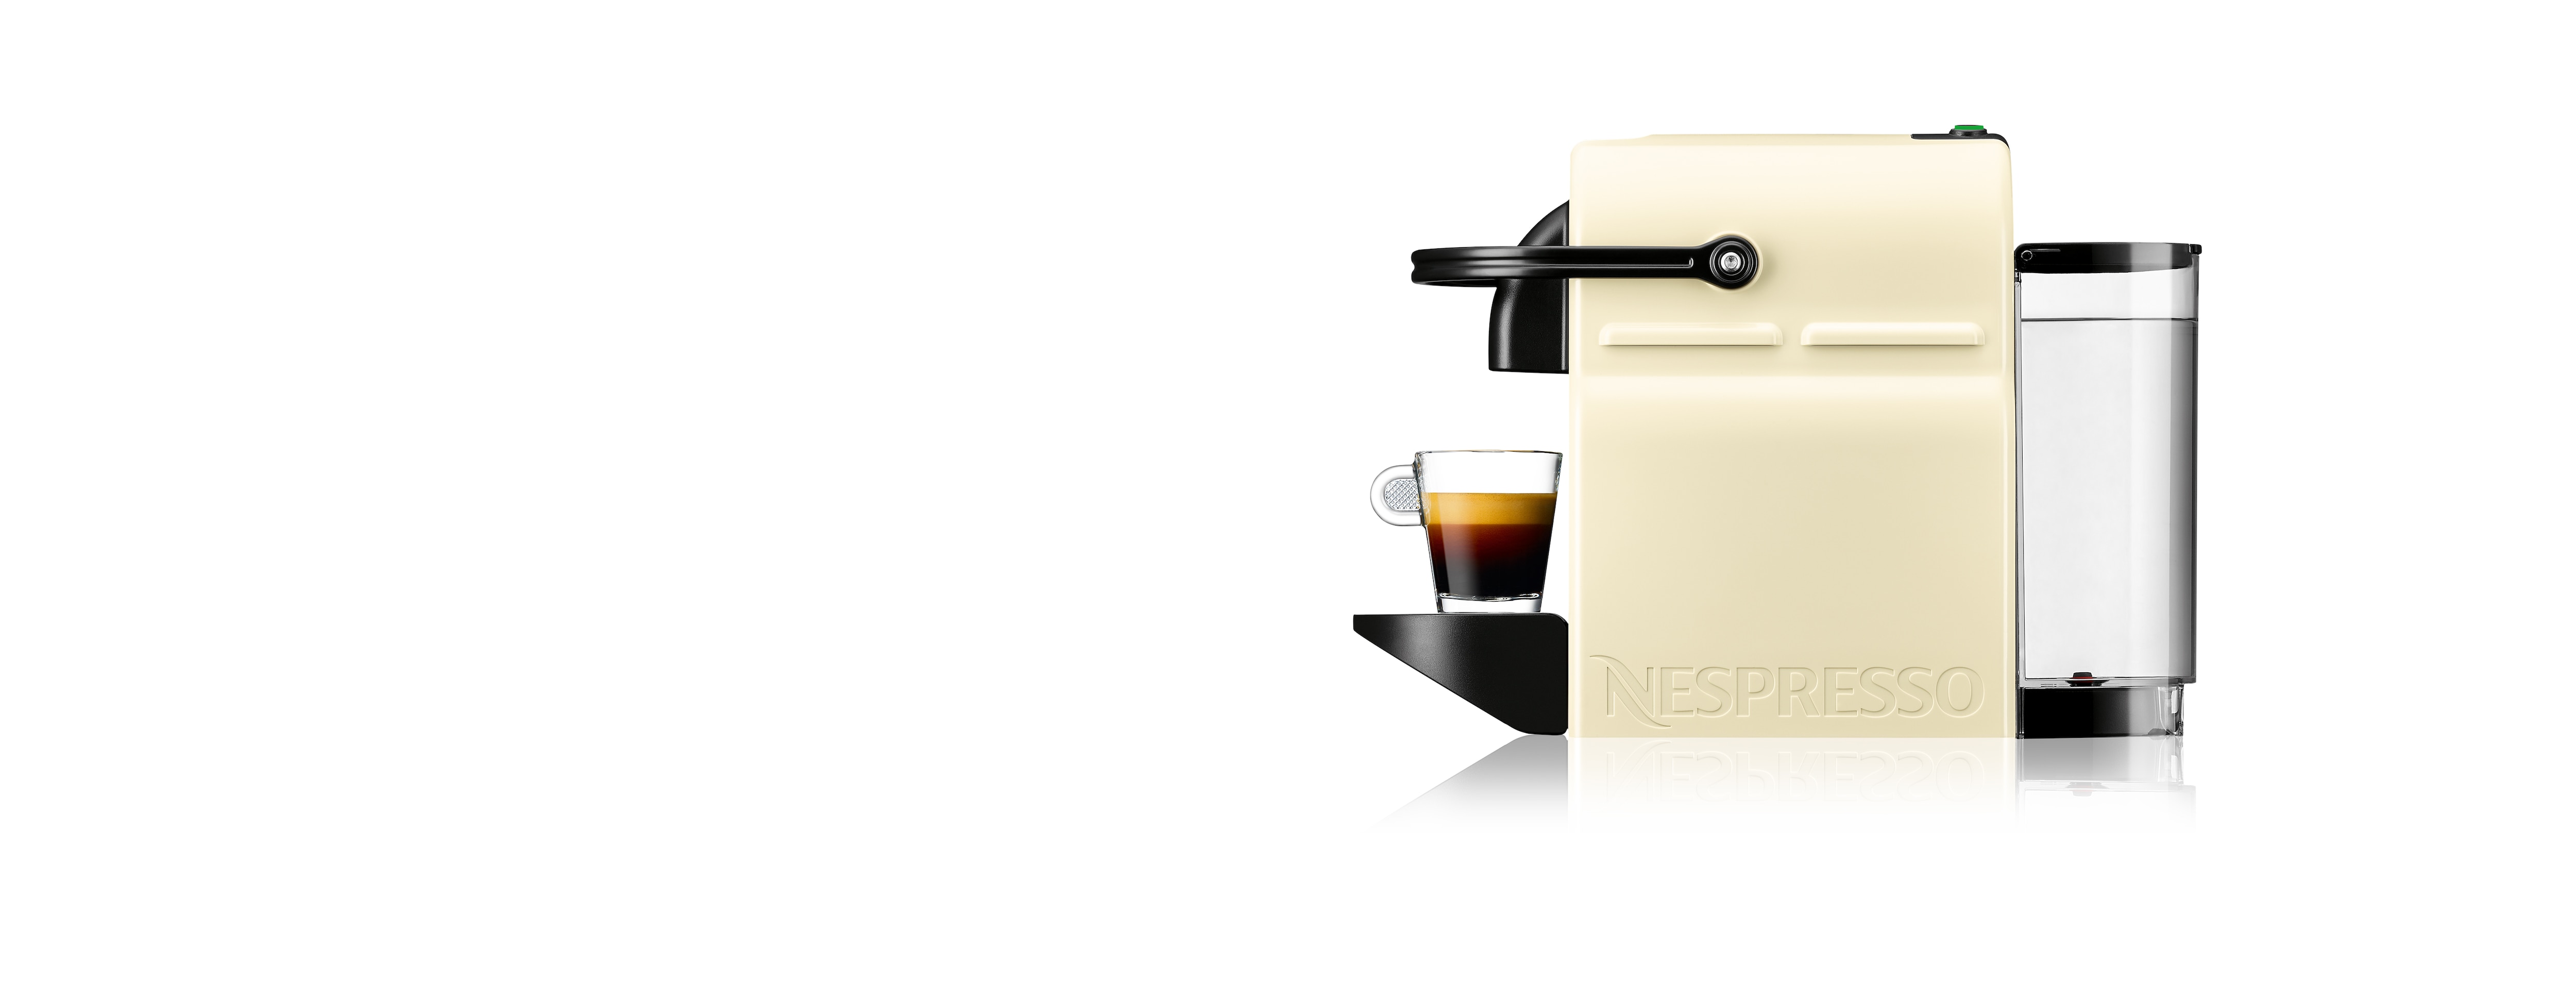 Hectare Erge, ernstige Stereotype Nespresso - Coffee Machine Details Page